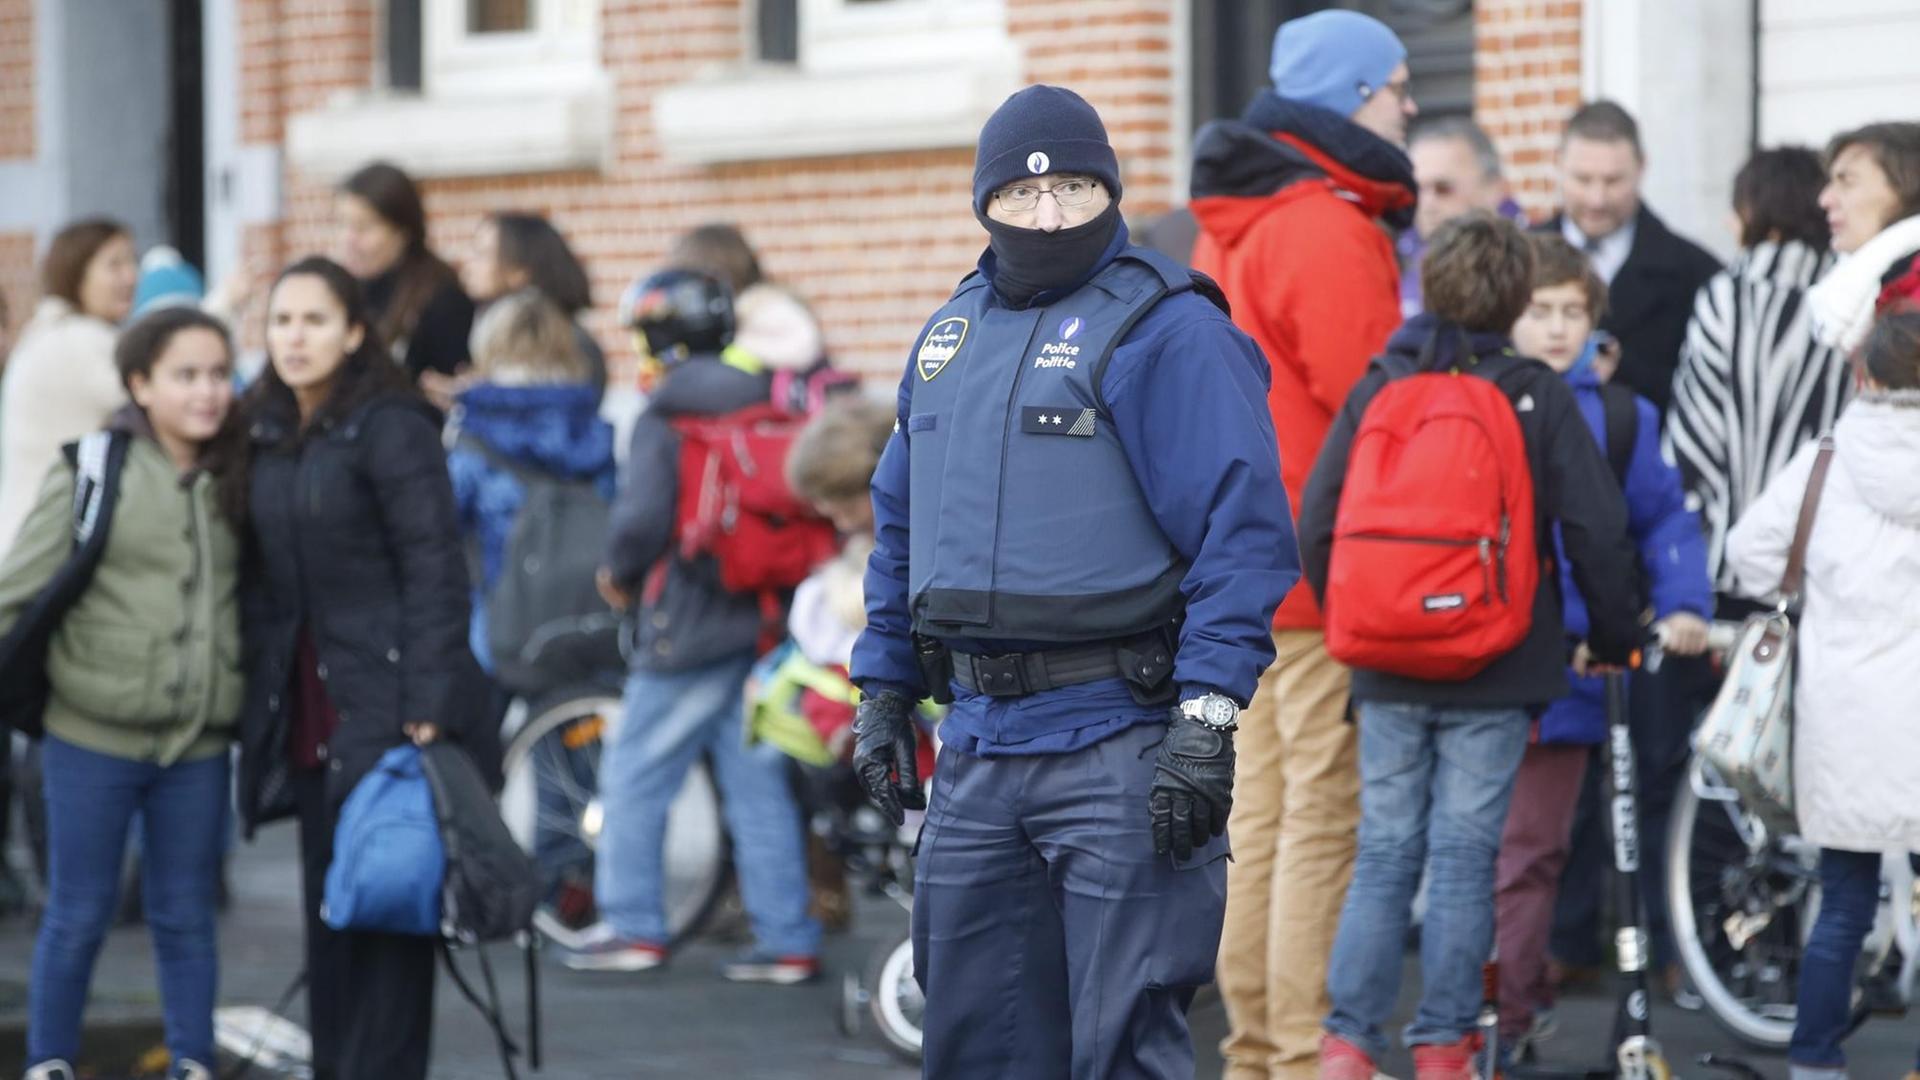 Man sieht einen Polizisten mit Mütze und kugelsicherer Weste, dahinter stehen Schüler.